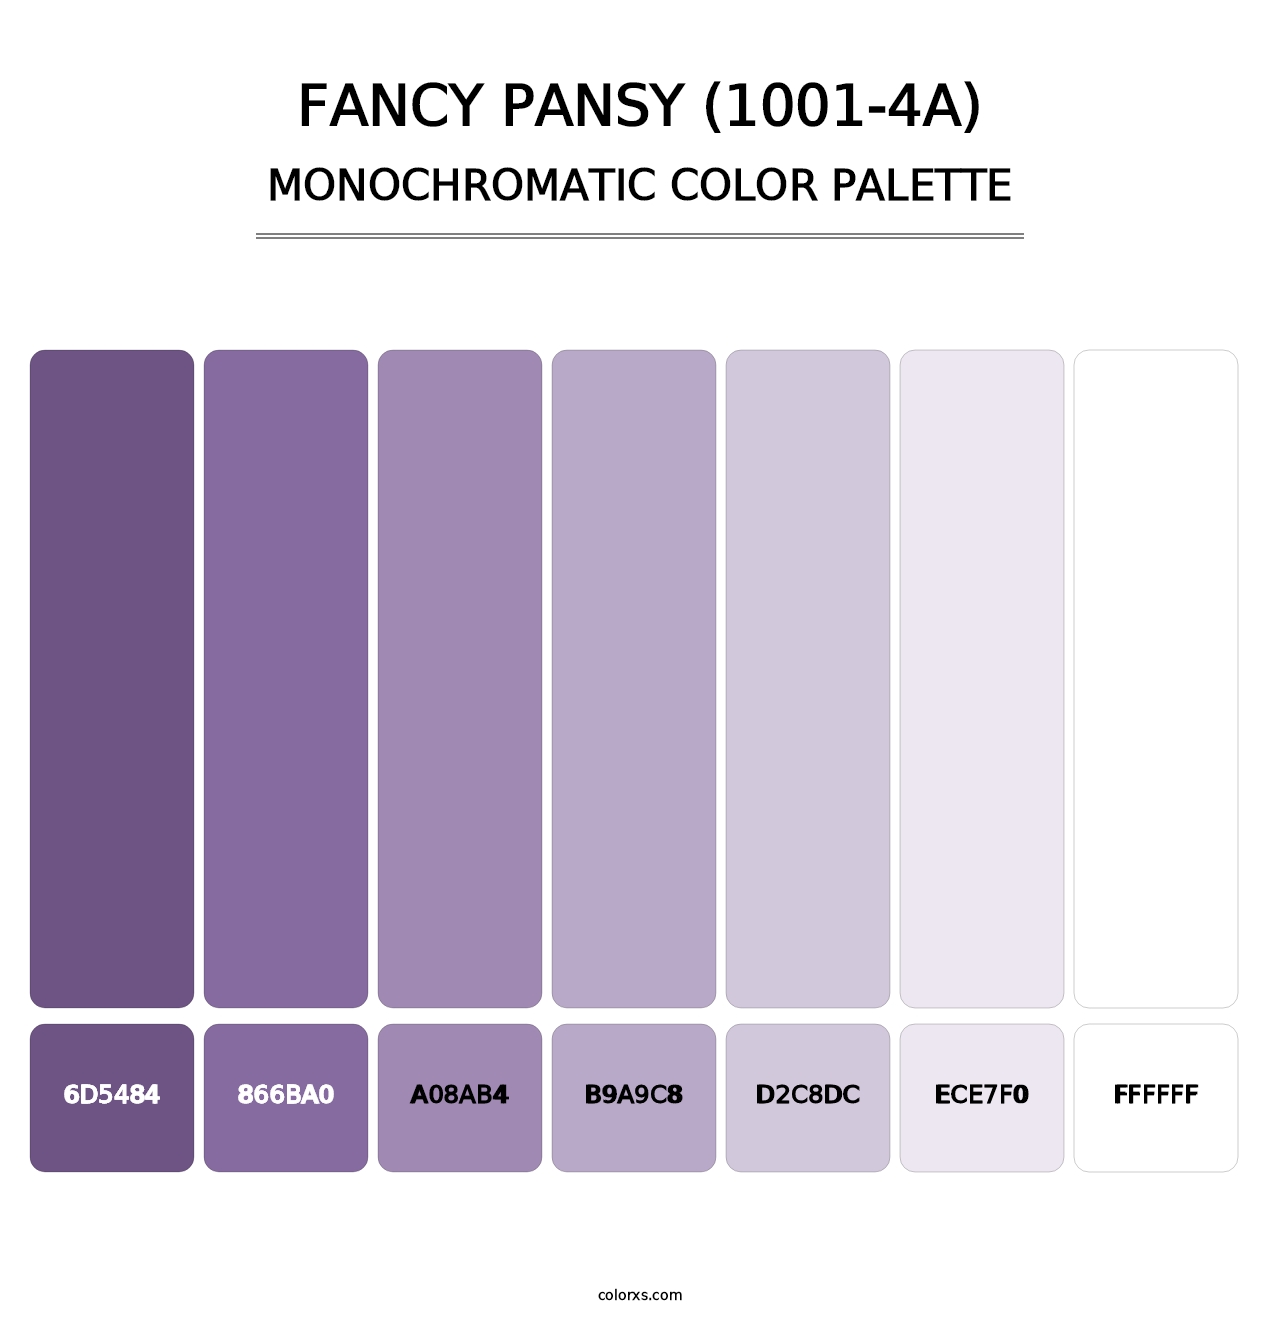 Fancy Pansy (1001-4A) - Monochromatic Color Palette